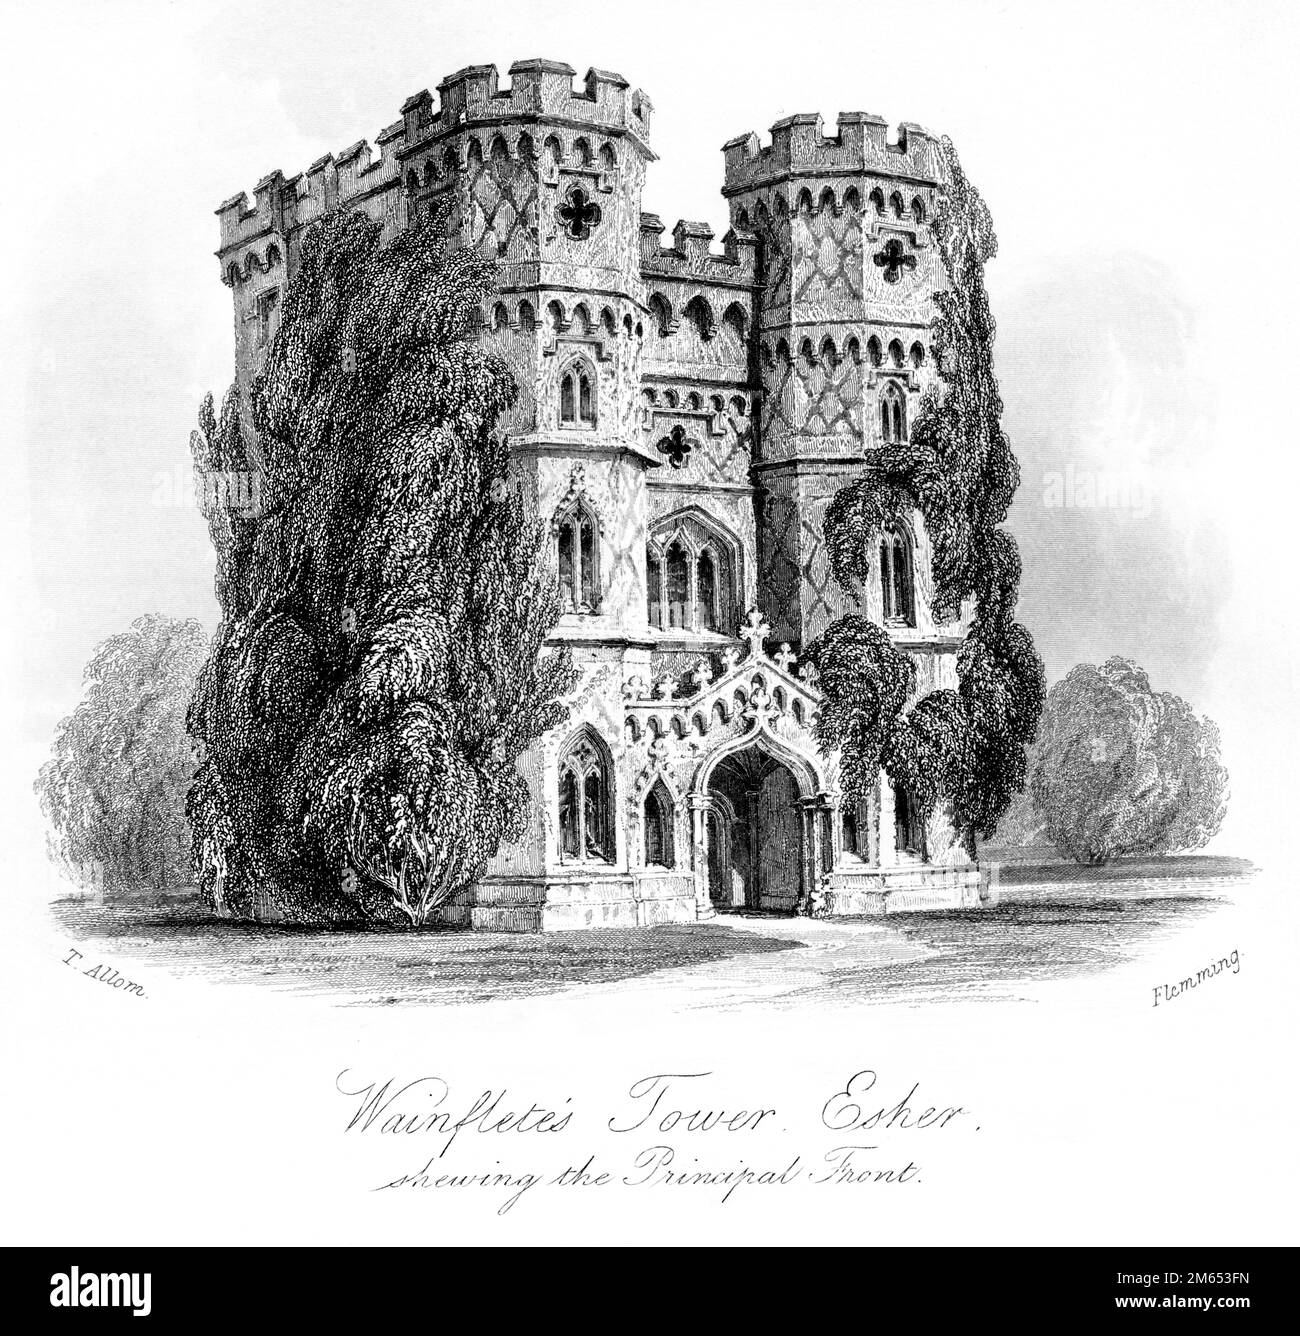 Eine Gravur des Wainfletes Tower Esher Shewing the Principal Front, (Wayneflete Tower) Surrey scannte in hoher Auflösung von einem 1850 gedruckten Buch. Stockfoto